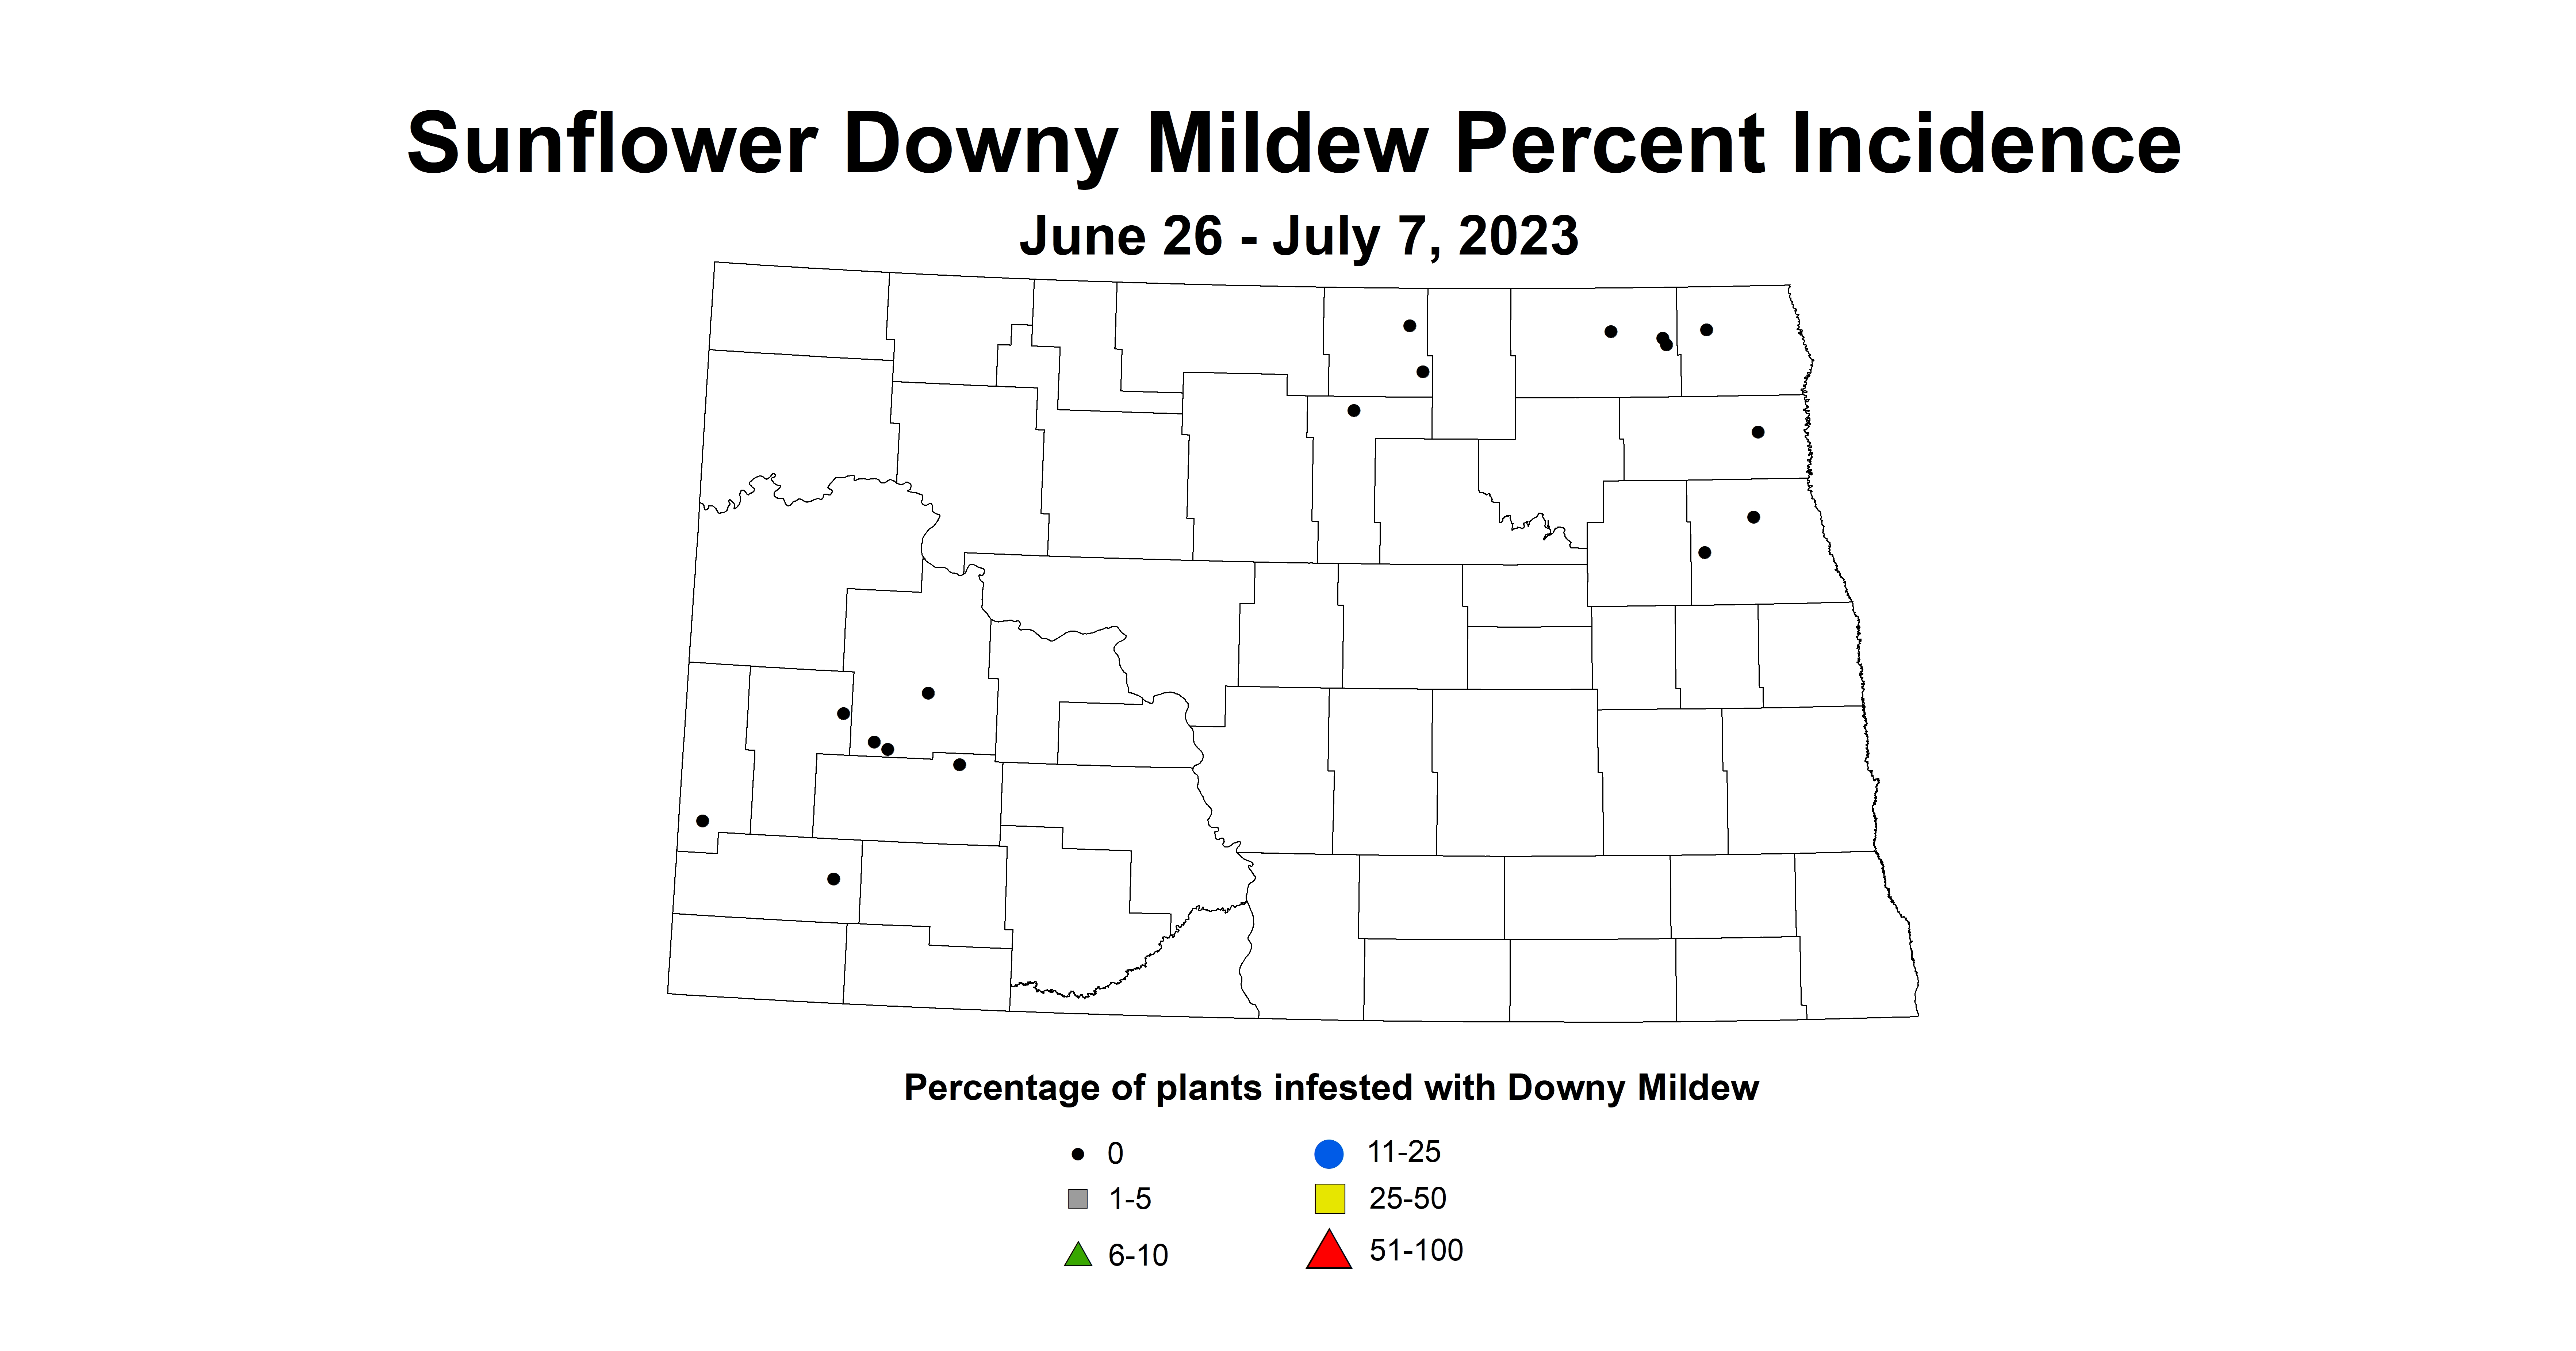 sunflower downy mildew June 26 - July 7 2023